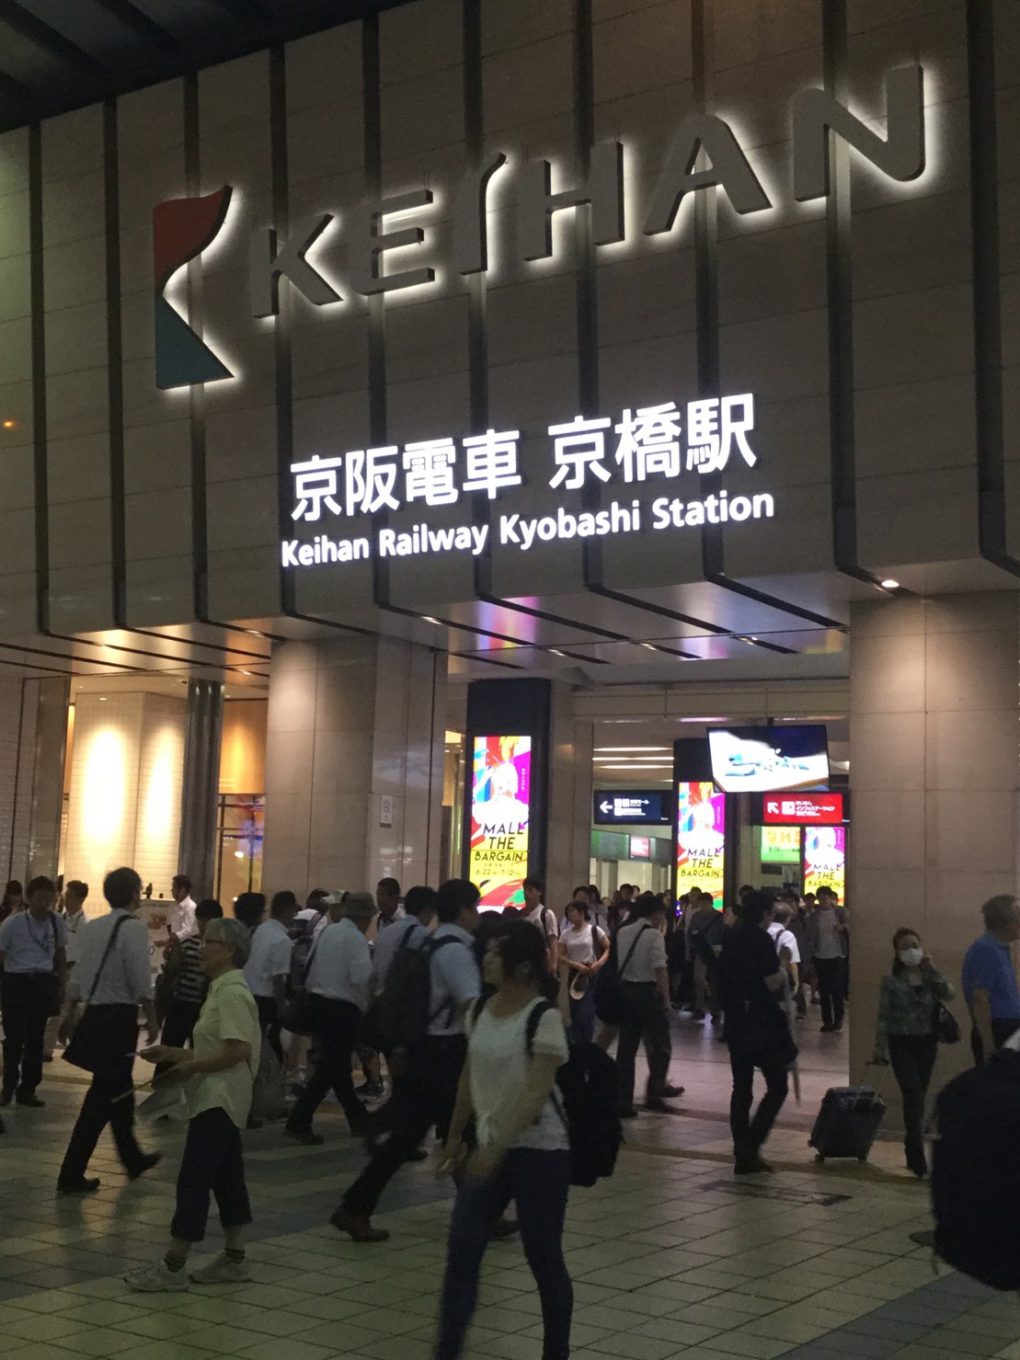 京阪京橋駅中央口を出てすぐ左に曲がってください。